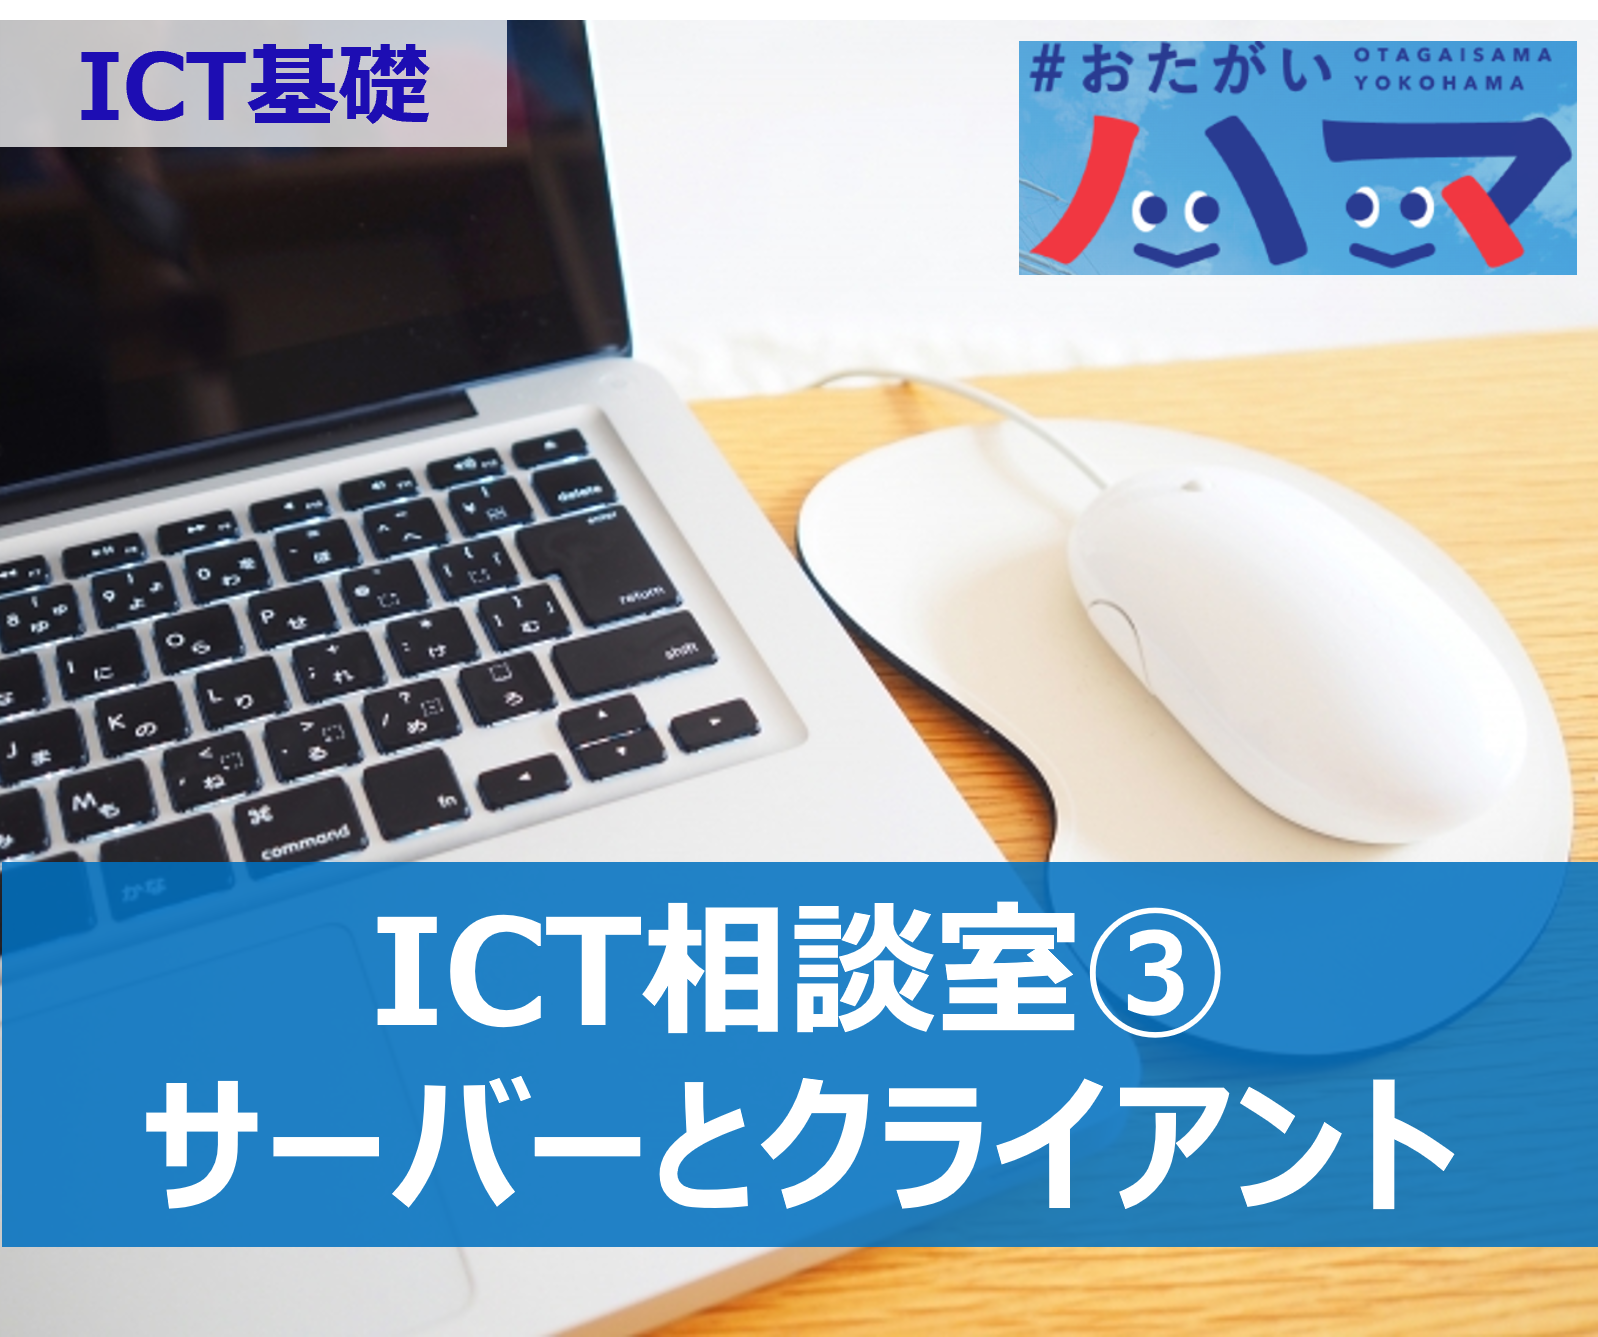 サーバーとクライアントなどのITを使ったコミュニケーション ICT相談室③ - ICT基礎